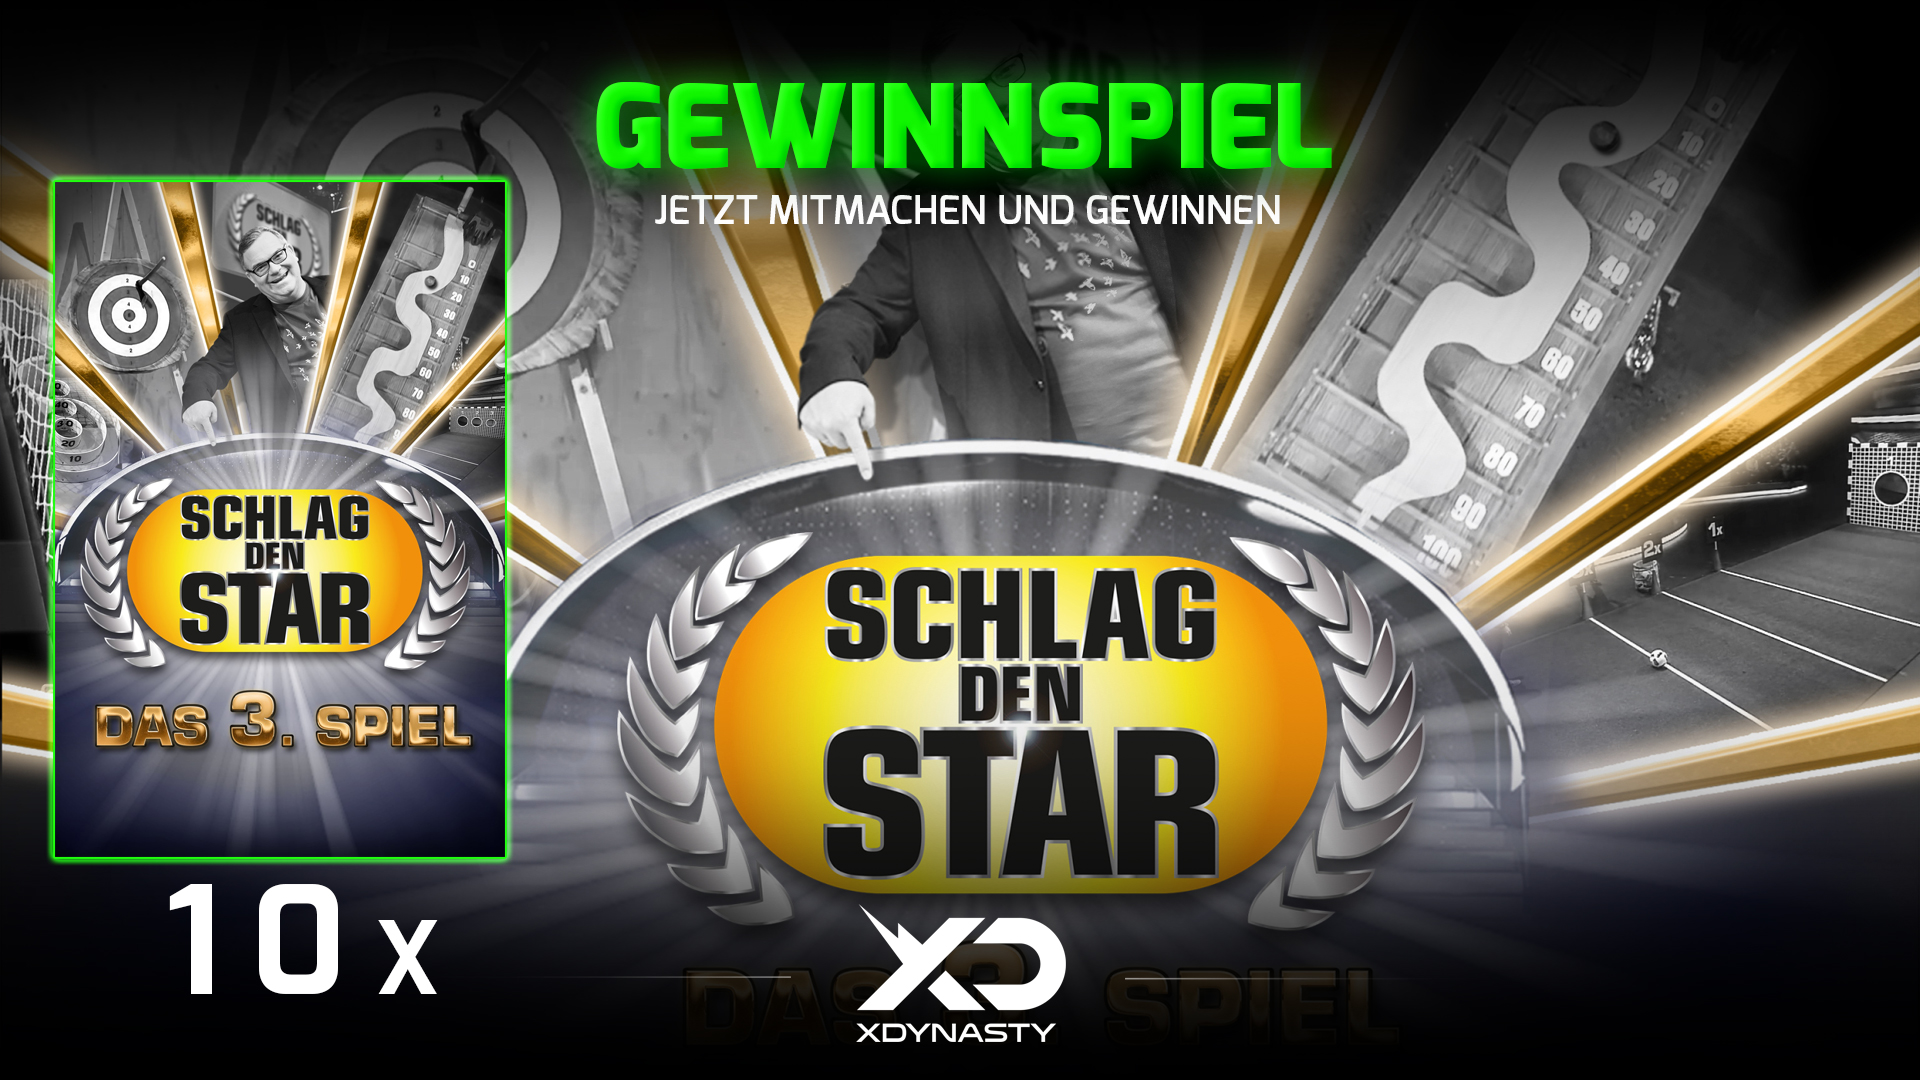 Gewinner Das Star - Schlag Spiel 10 den XboxDynasty: ausgelost 3. Alle